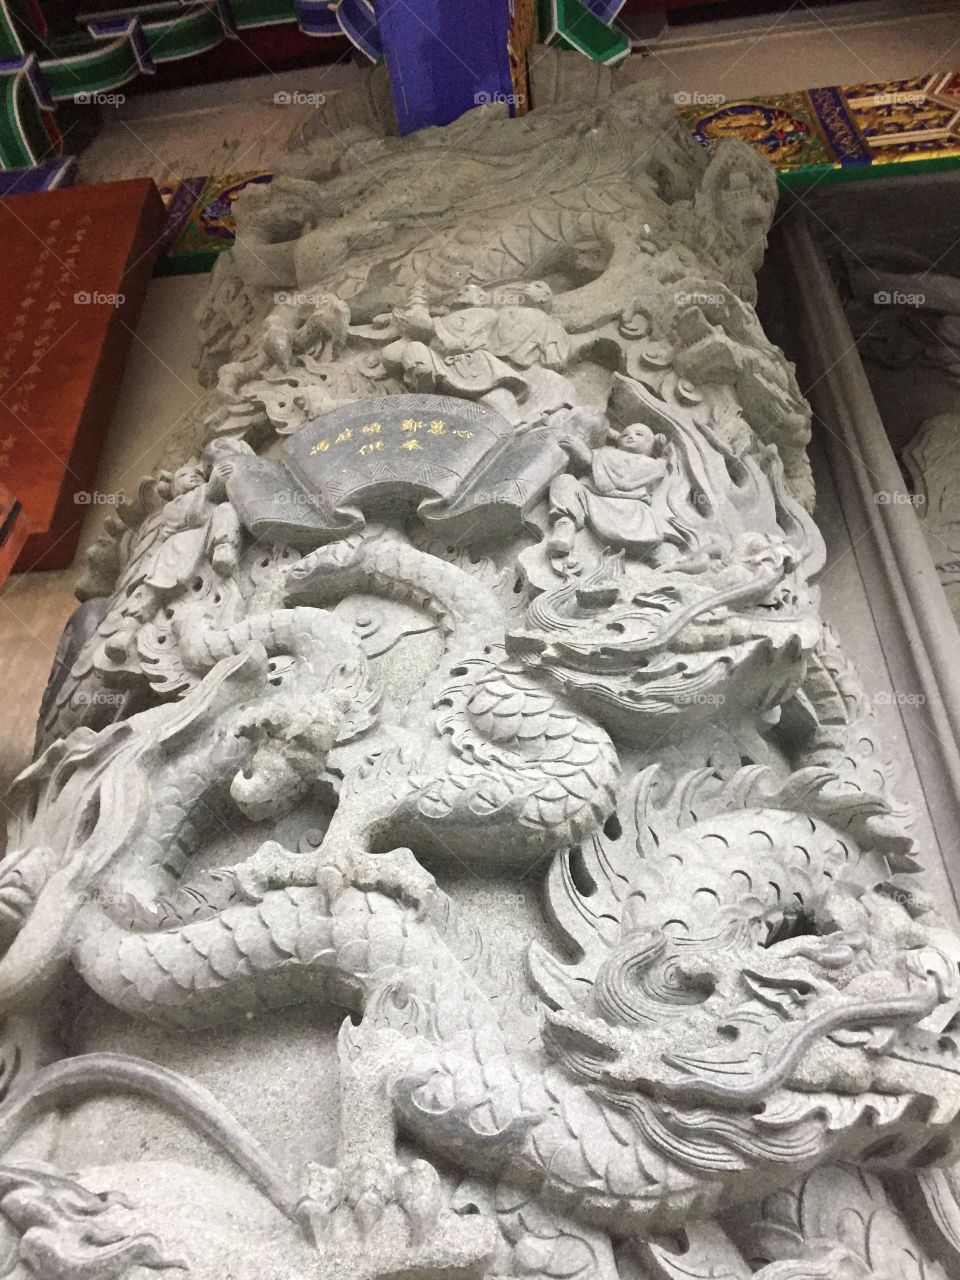 Dragons and Lions at Po Lin Monastery, Ngong Ping Village, Lantau Island, in Hong Kong